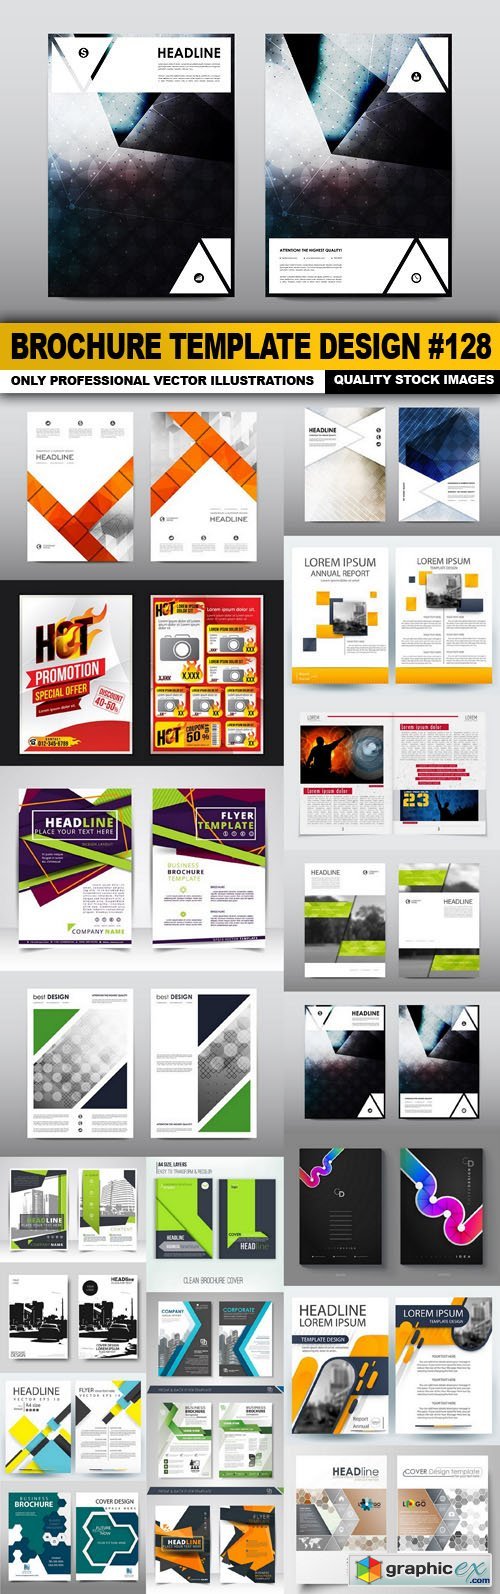 Brochure Template Design #128 - 20 Vector